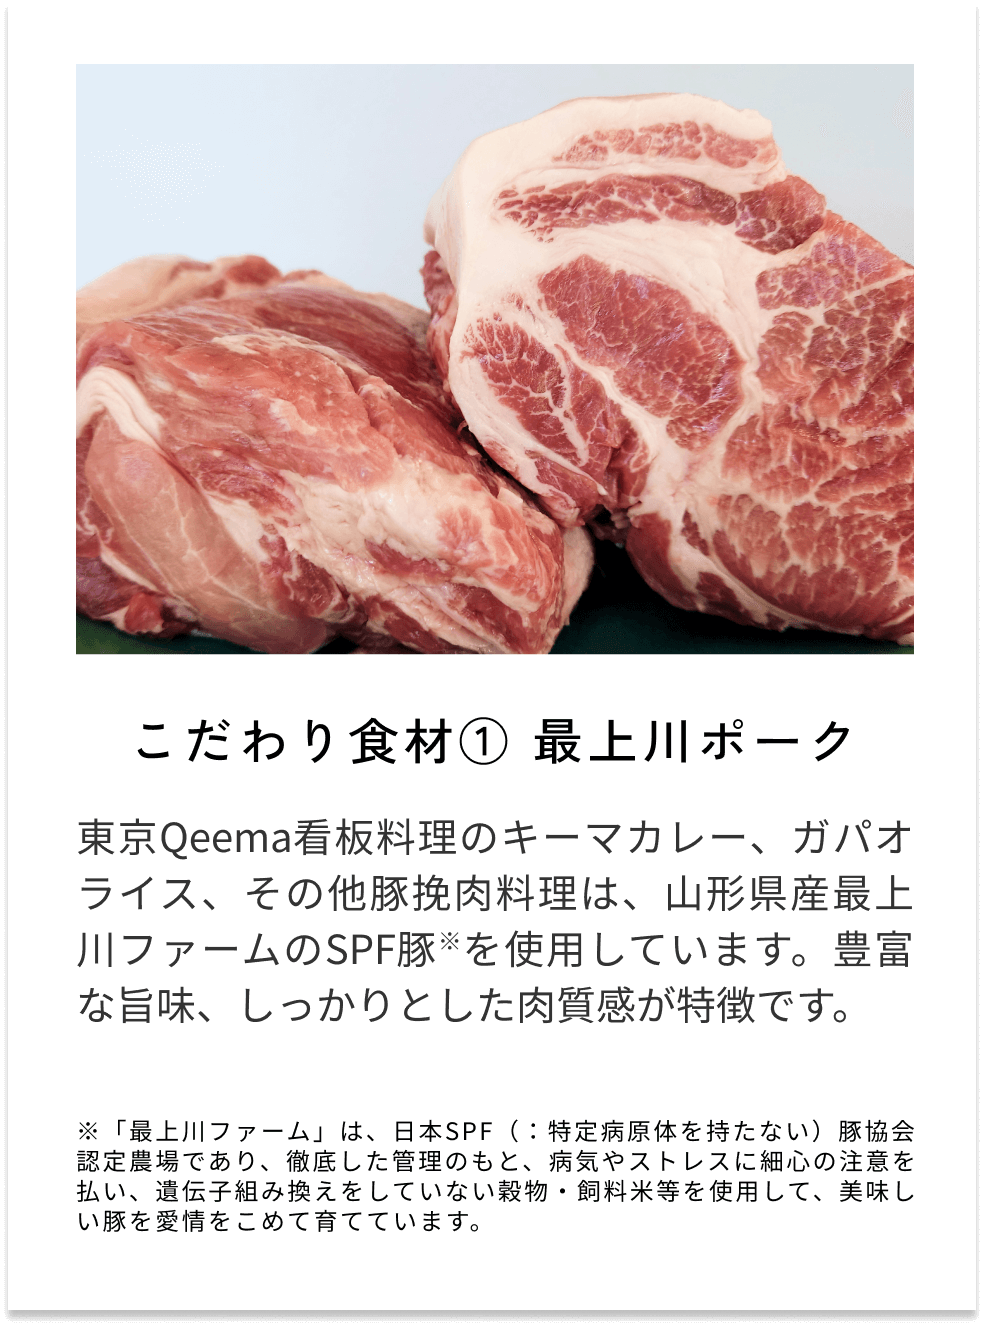 こだわり食材①最上川ポーク 東京Qeema看板料理のキーマカレー、ガパオライス、その他豚挽肉料理は、山形県産最上川ファームのSPF豚※を使用しています。豊富な旨味、しっかりとした肉質感が特徴です。 ※「最上川ファーム」は、日本SPF（：特定病原体を持たない）豚協会認定農場であり、徹底した管理のもと、病気やストレスに細心の注意を払い、遺伝子組み換えをしていない穀物・飼料米等を使用して、美味しい豚を愛情をこめて育てています。